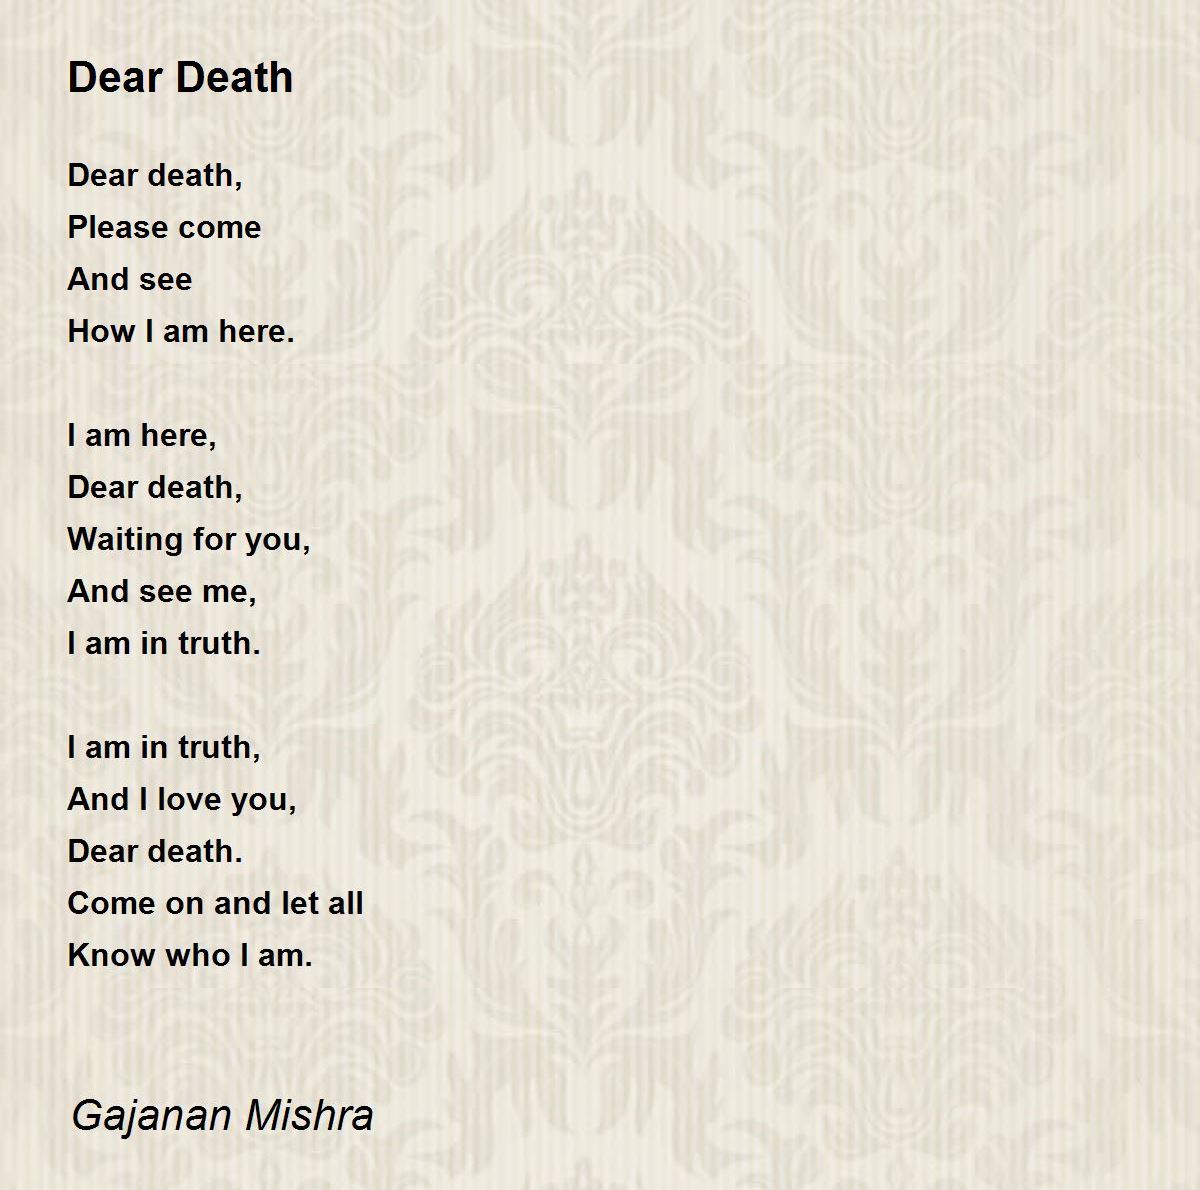 Dear Death - Dear Death Poem by Gajanan Mishra